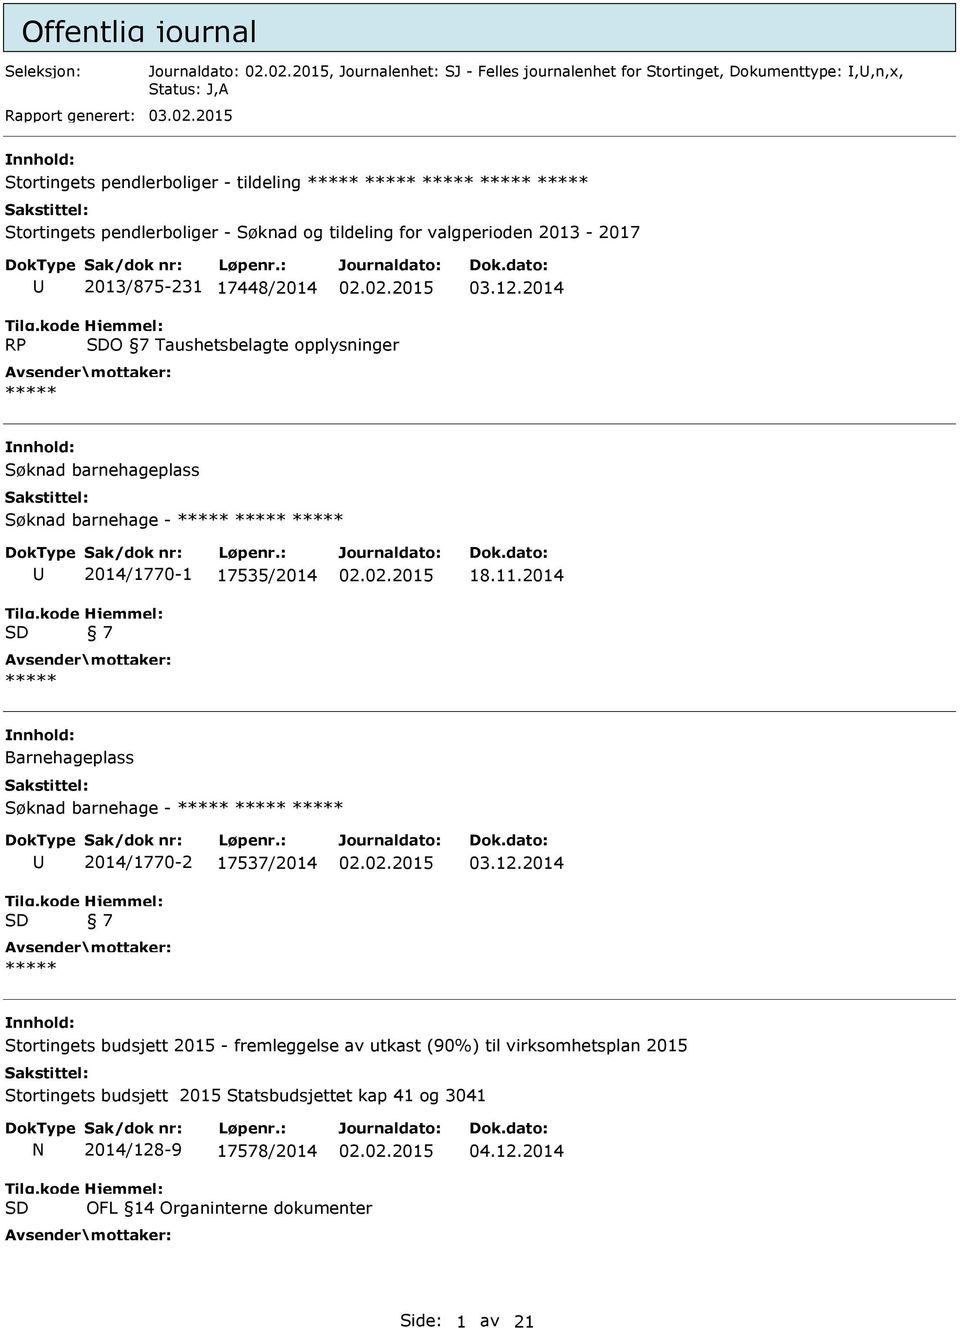 2014 RP O 7 Taushetsbelagte opplysninger nnhold: Søknad barnehageplass Søknad barnehage - U 2014/1770-1 17535/2014 7 18.11.